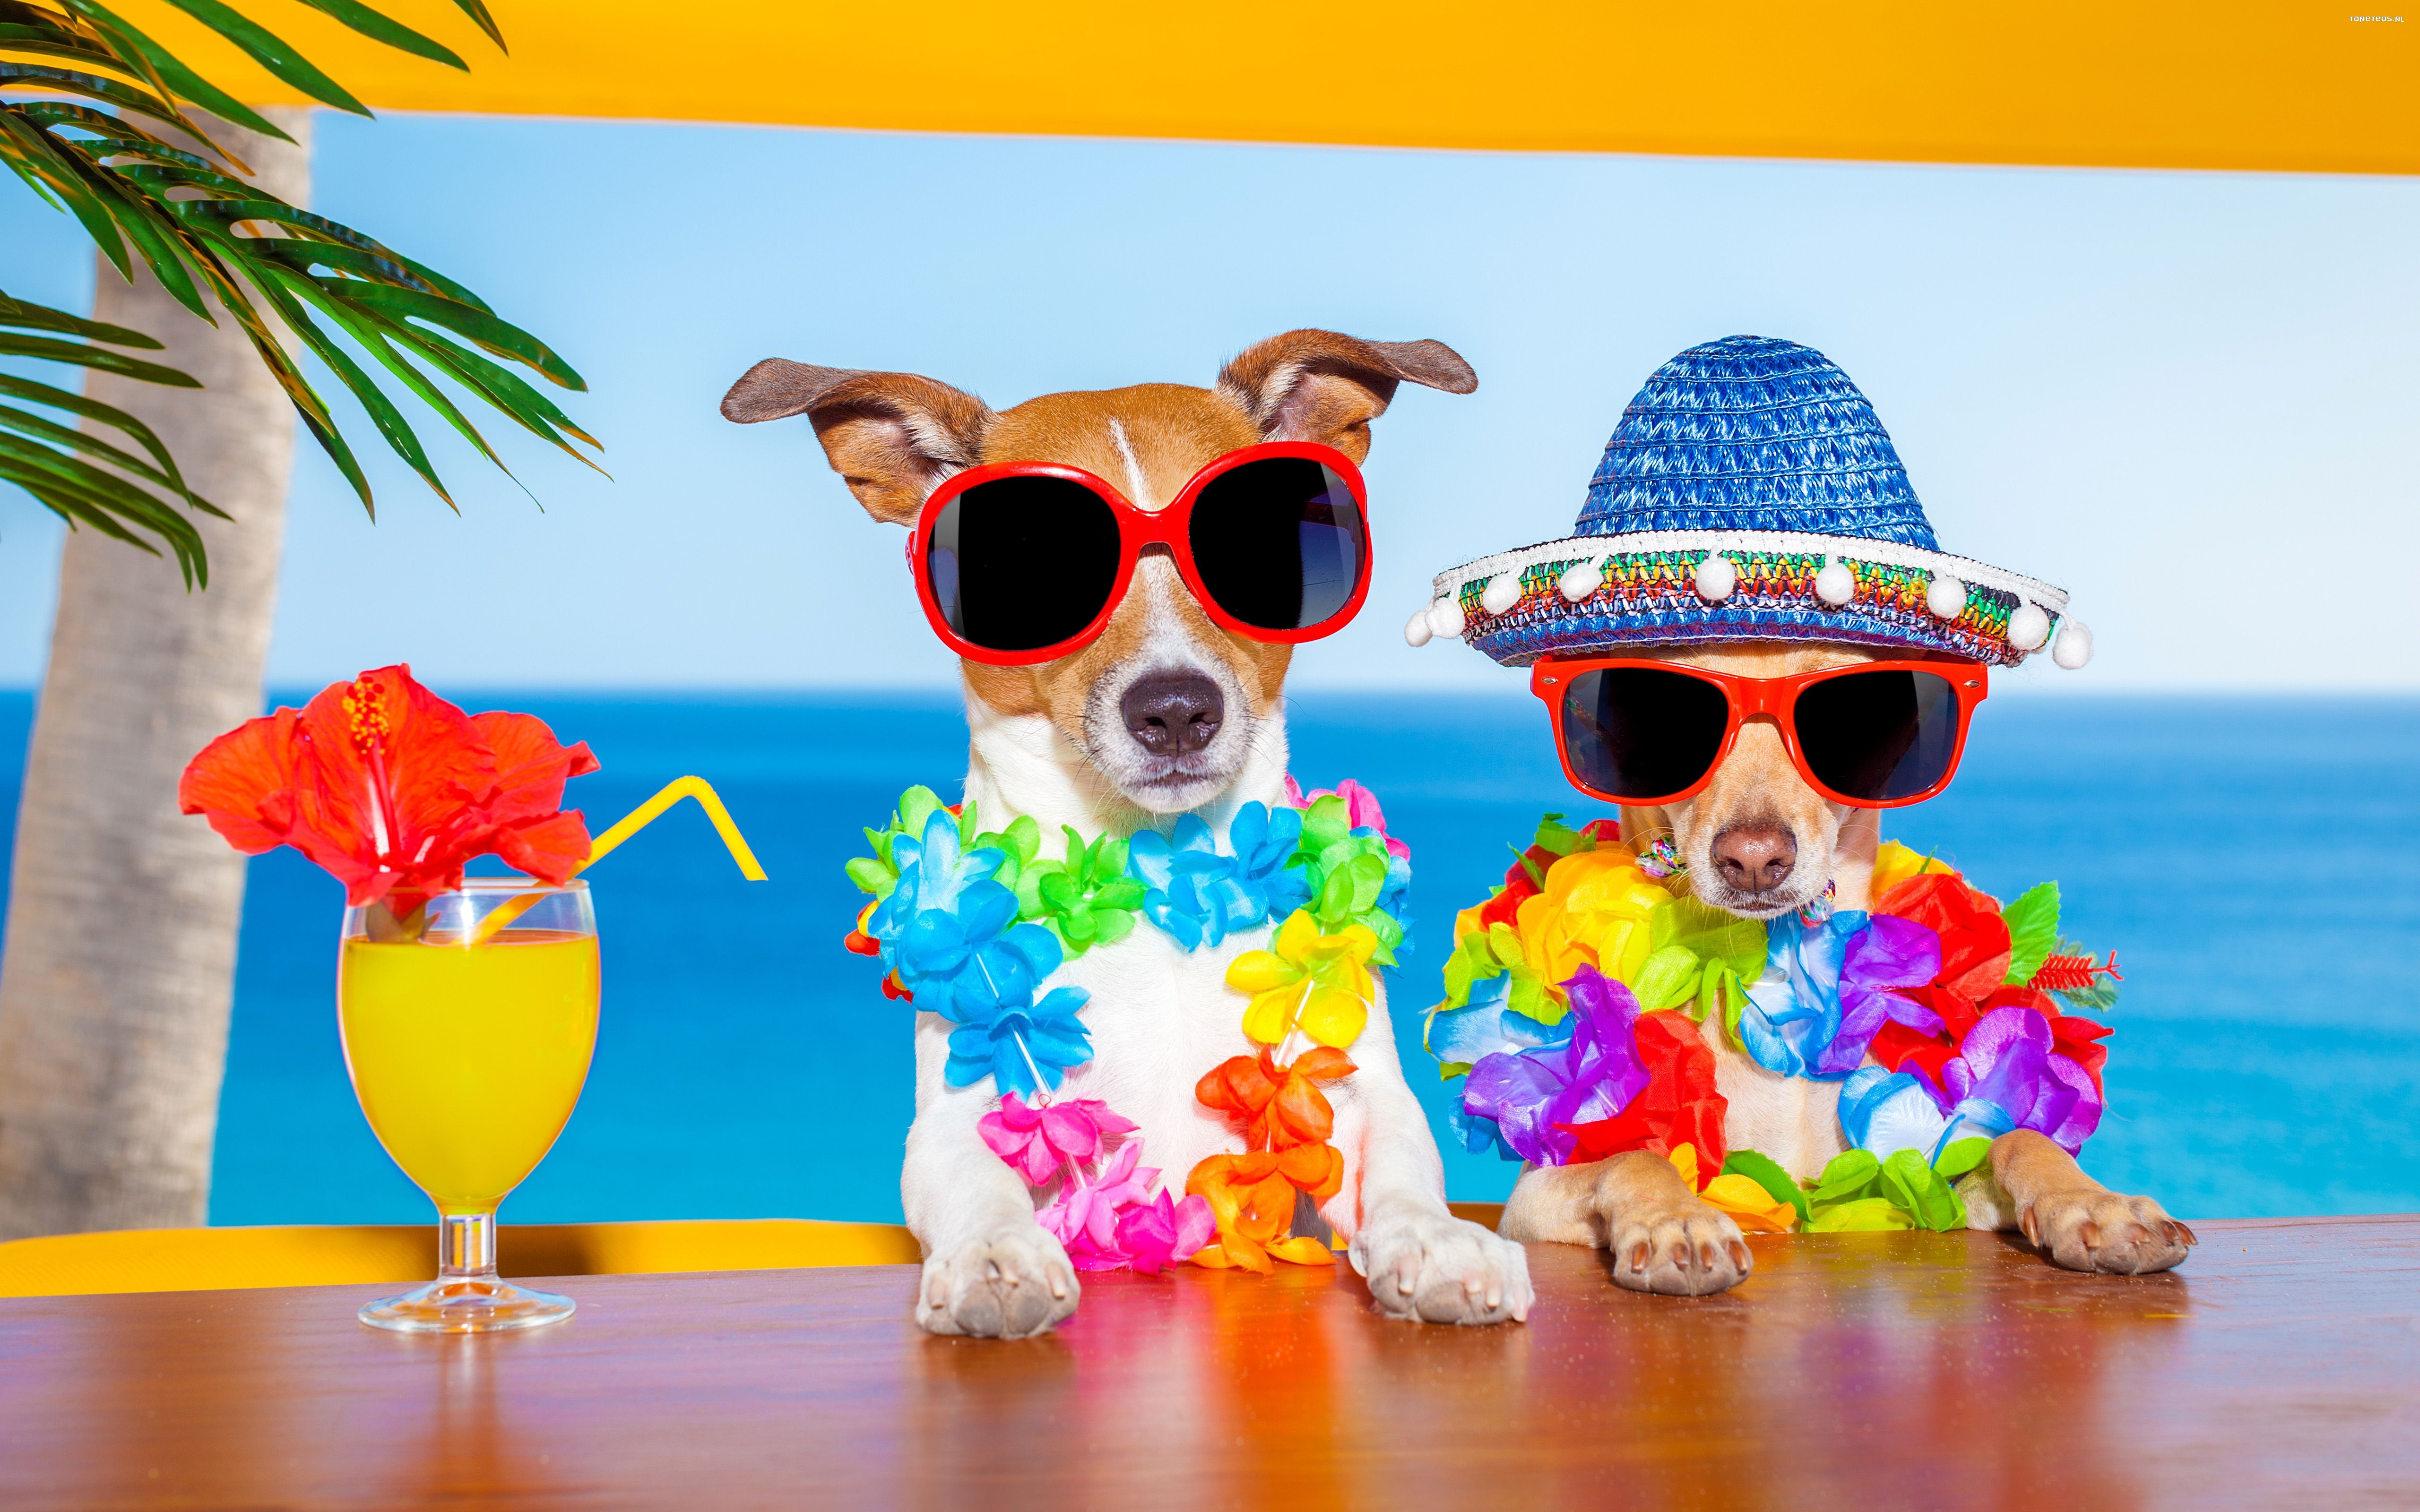 Jack Russell Terrier 093 Psy, Zwierzeta, Humor, Bar, Tropiki, Koktajl, Kapelusz, Okulary, Morze